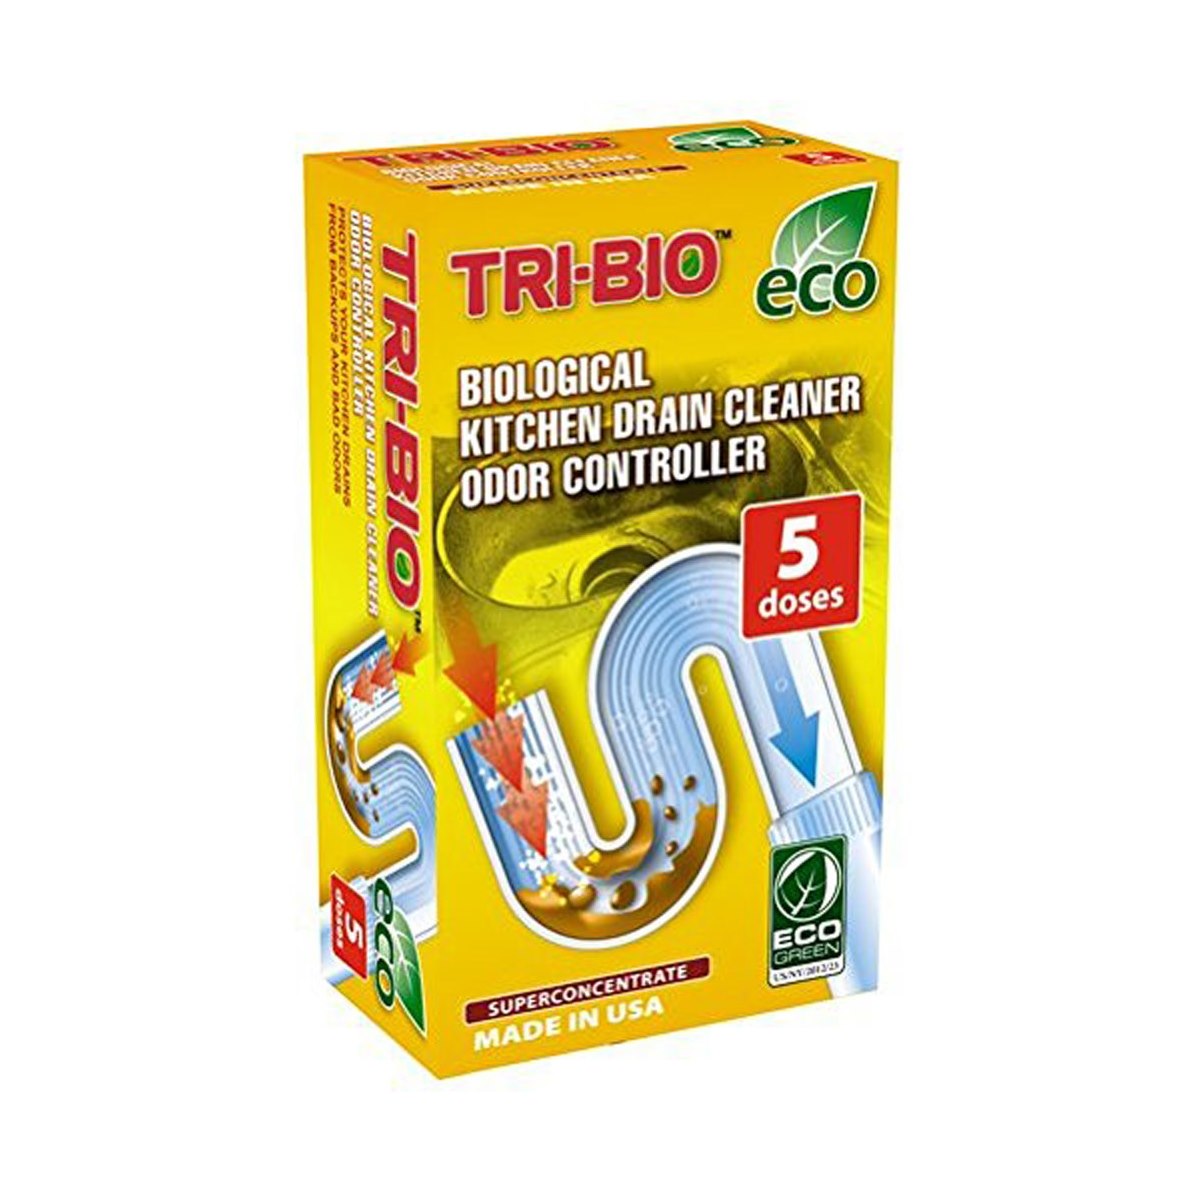 Tri-Bio Eco Kitchen Drain Cleaner 5 Dose